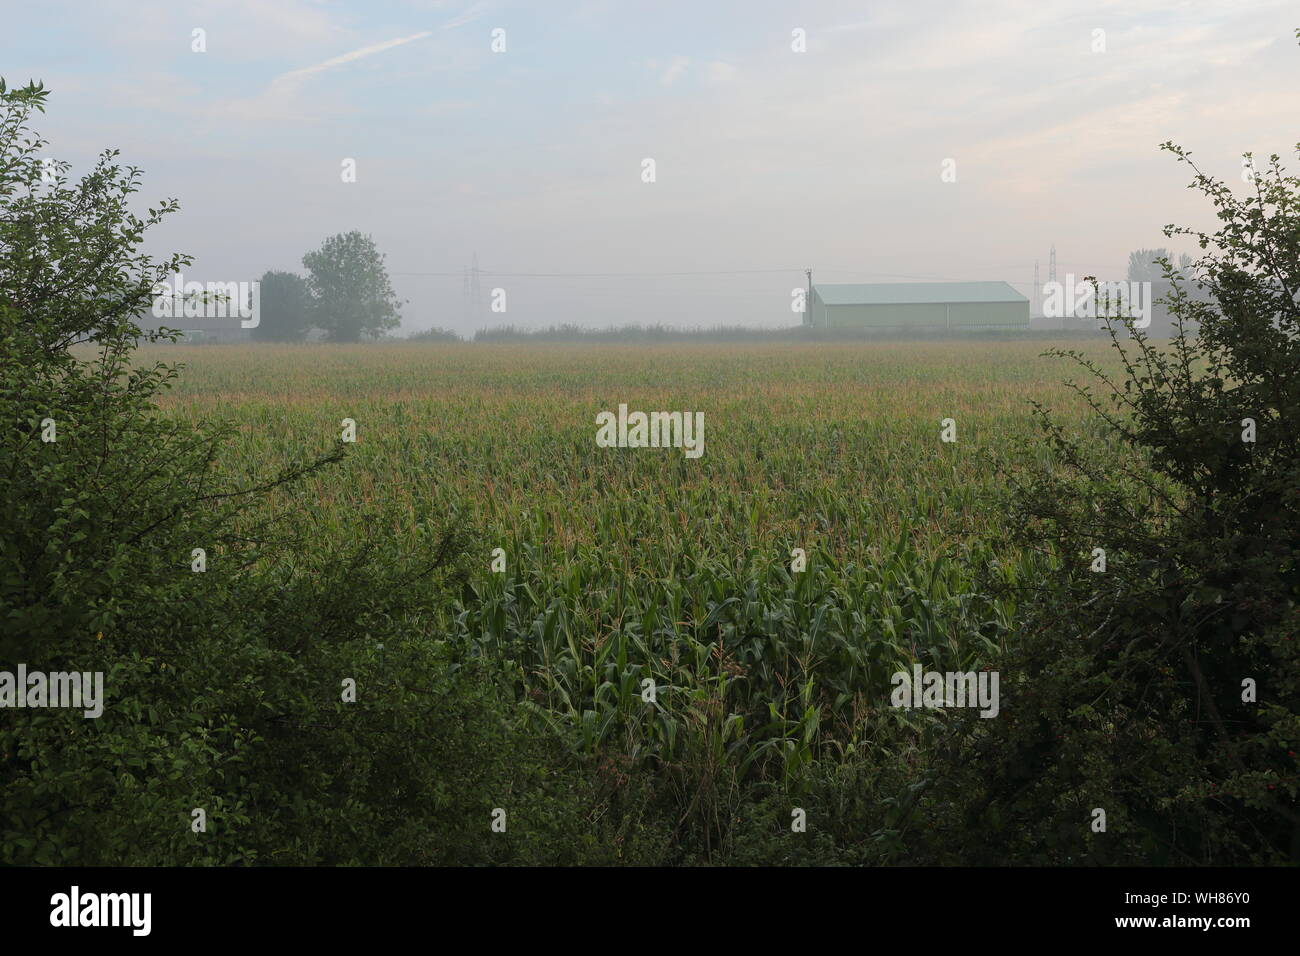 Misty Vista à Winterton montrant une grange dans la brume au-delà d'un champ de maïs Banque D'Images